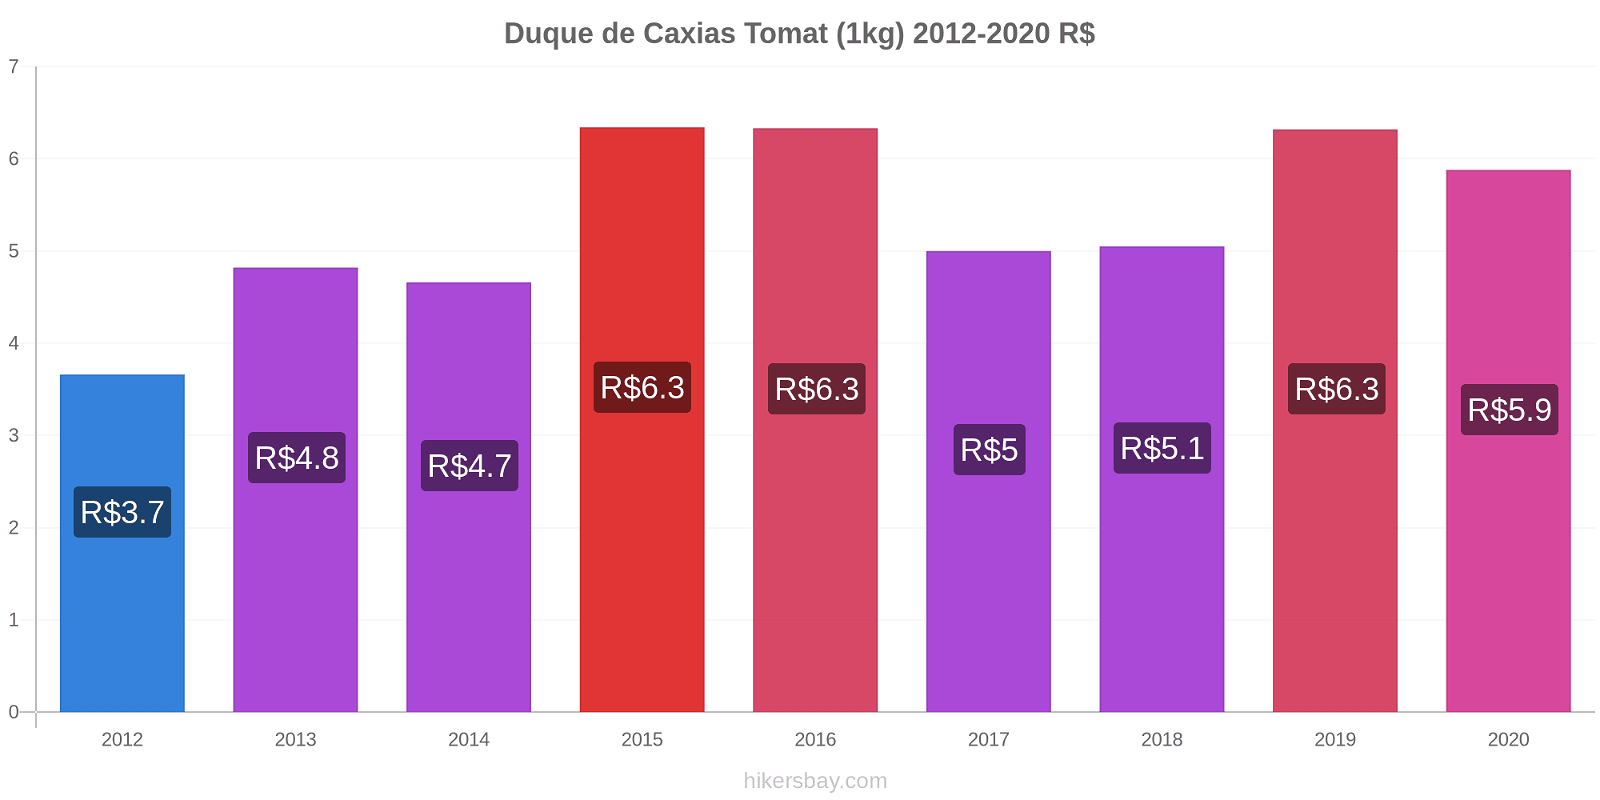 Duque de Caxias prisförändringar Tomat (1kg) hikersbay.com